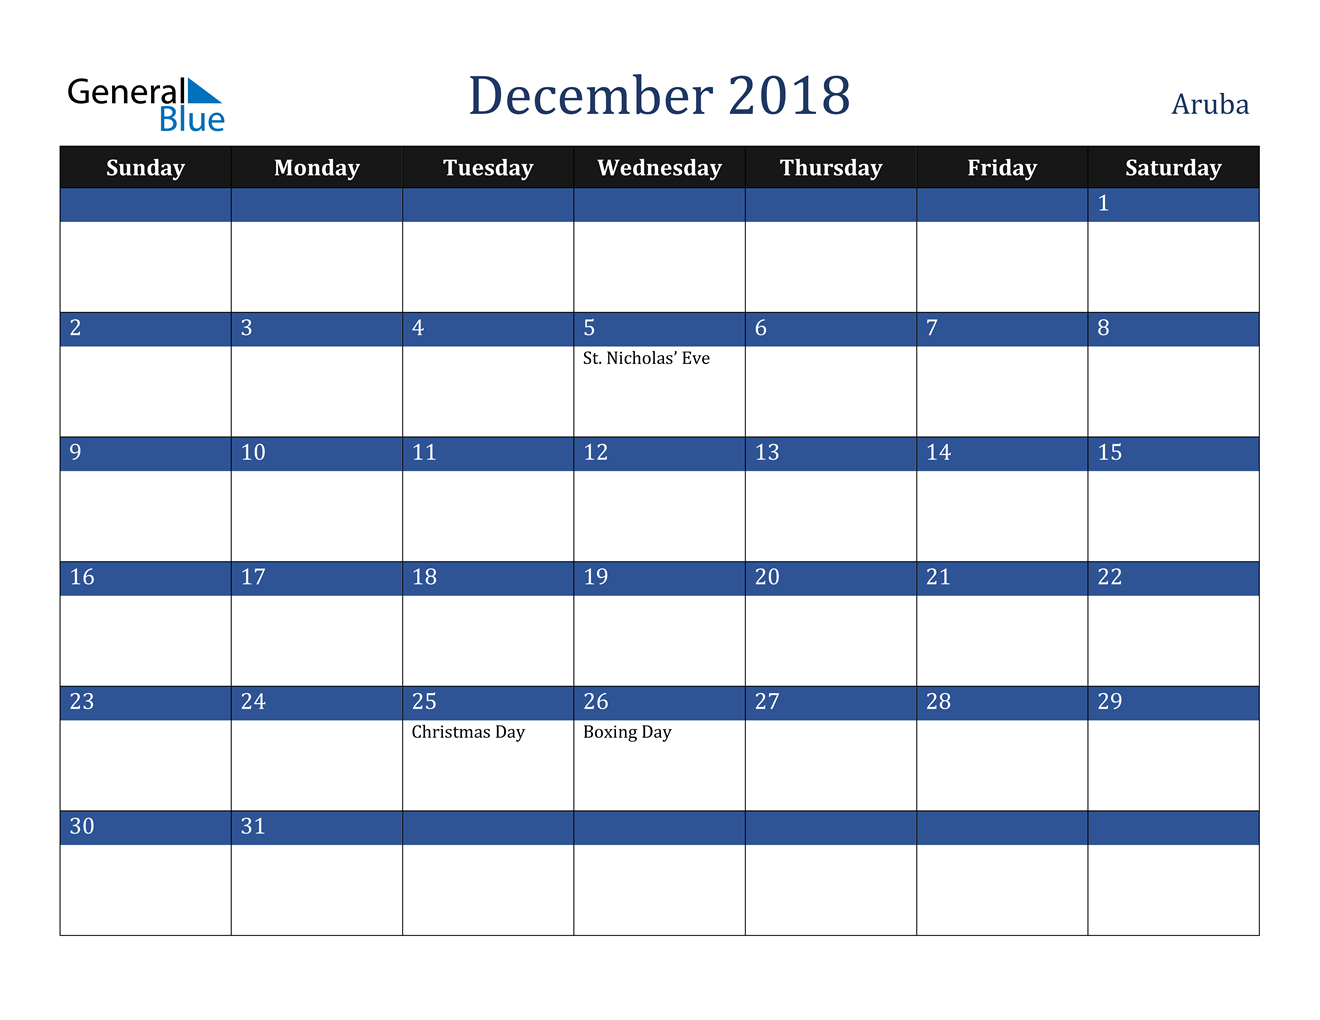 December 2018 Calendar Aruba